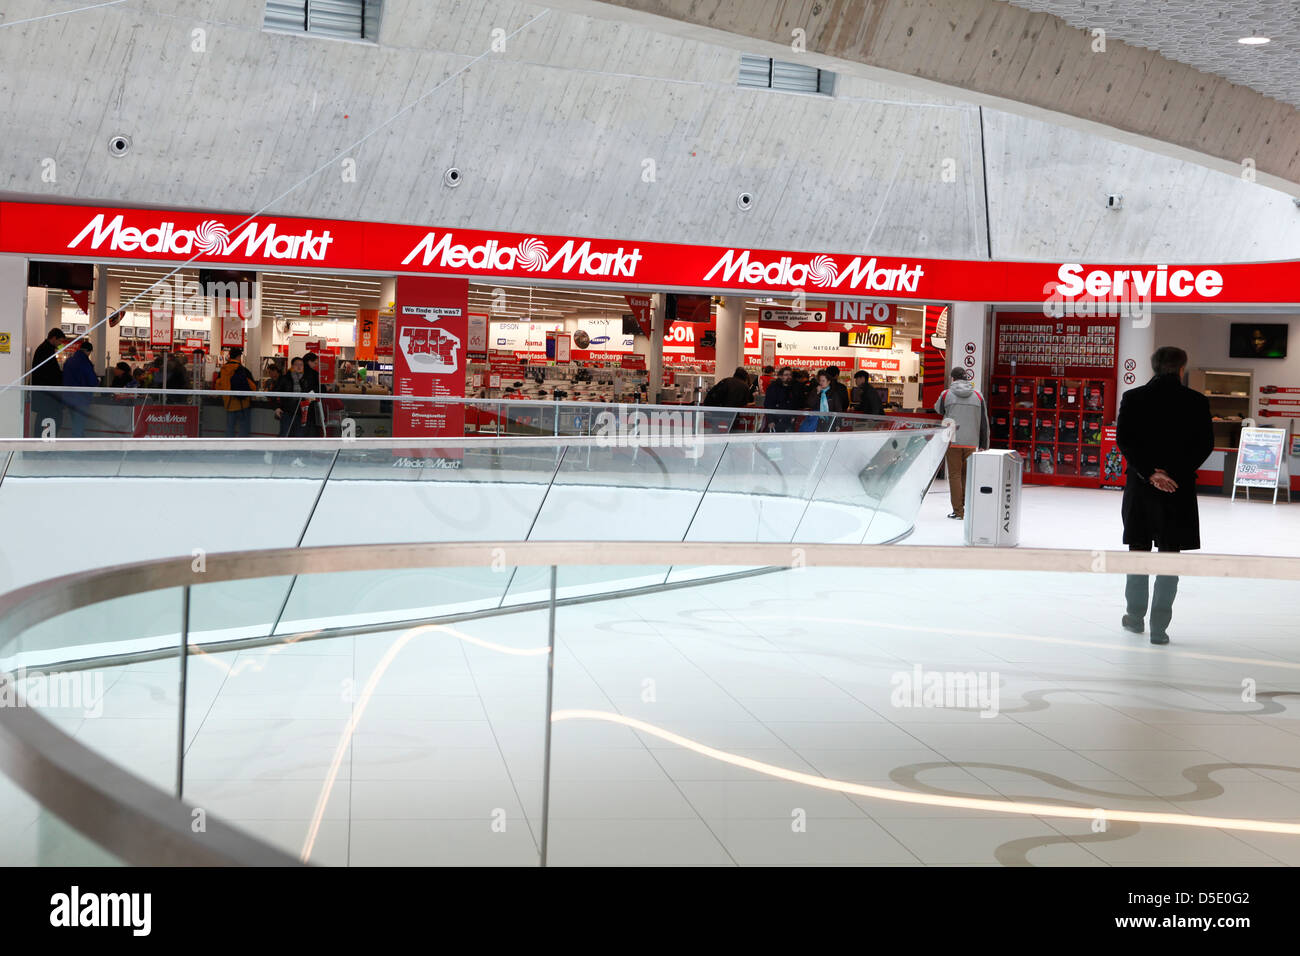 Media Markt at Wien Mitte mall in Vienna Stock Photo - Alamy